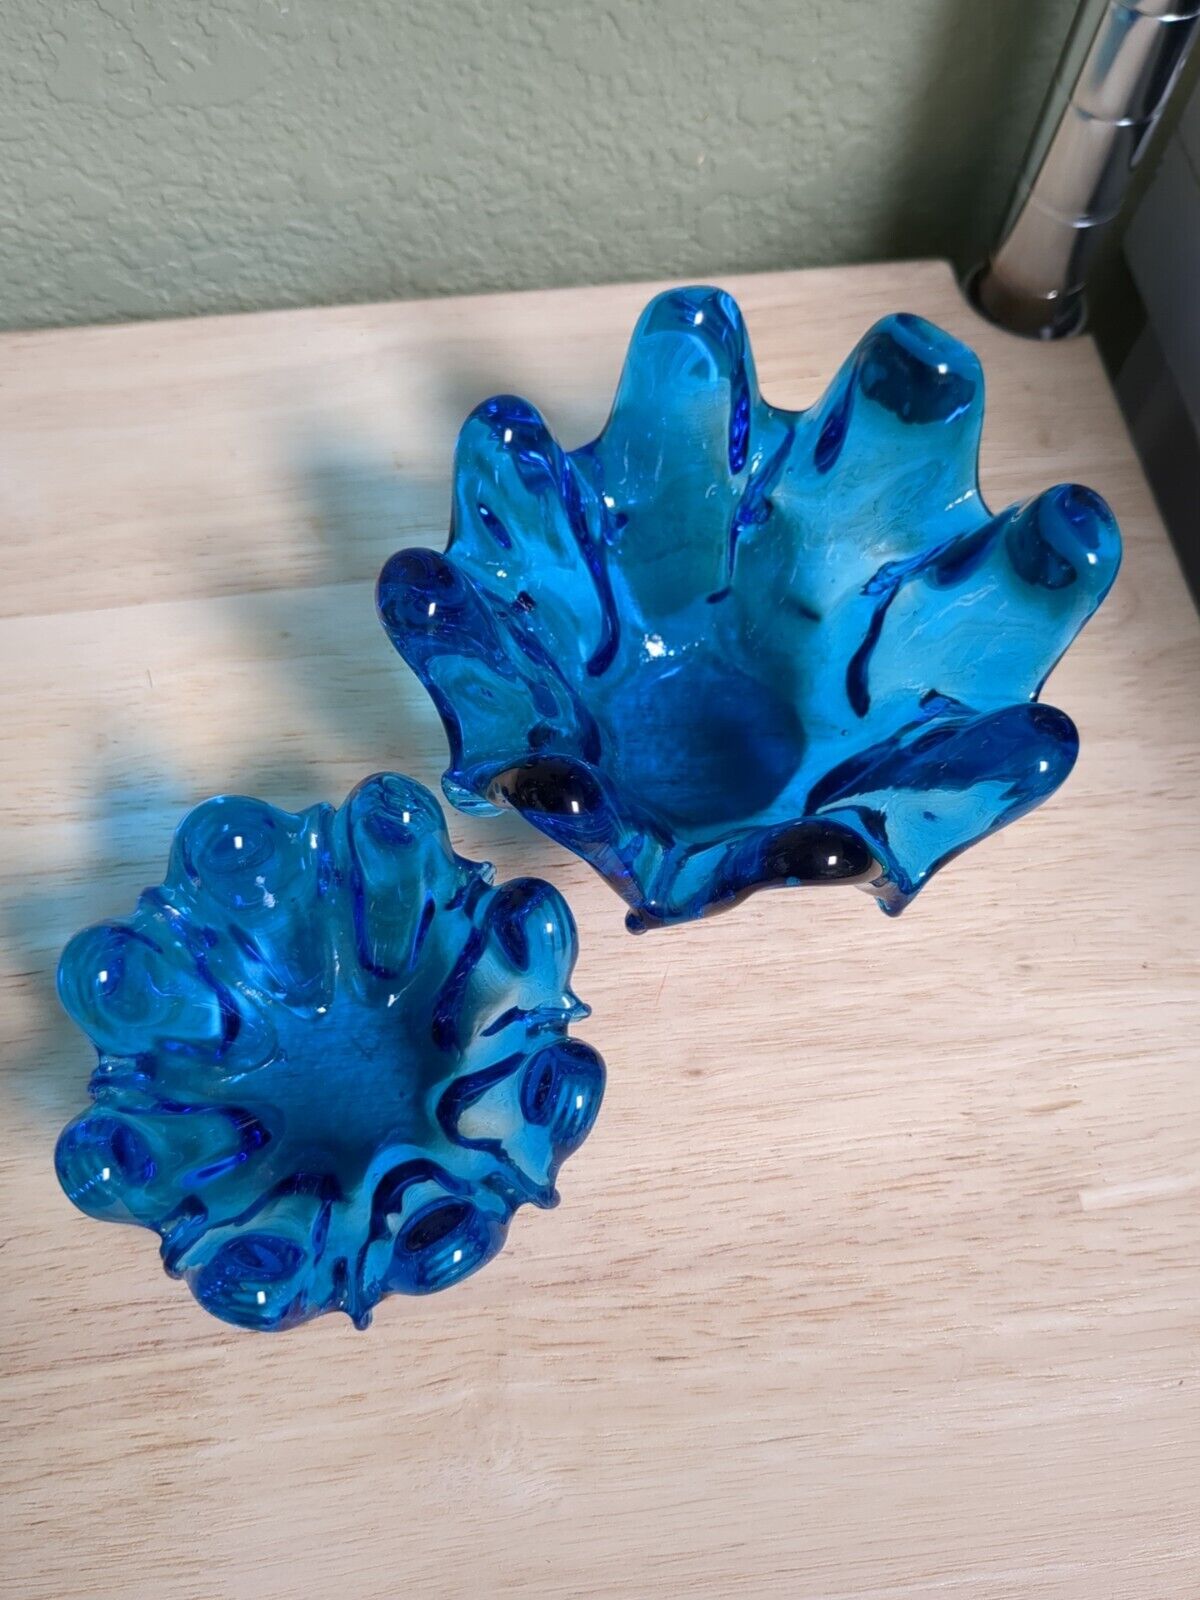 2 VTG MCM Italian Glass Blue Stacking Nesting Pulled Finger Ruffle Edge Bowls 